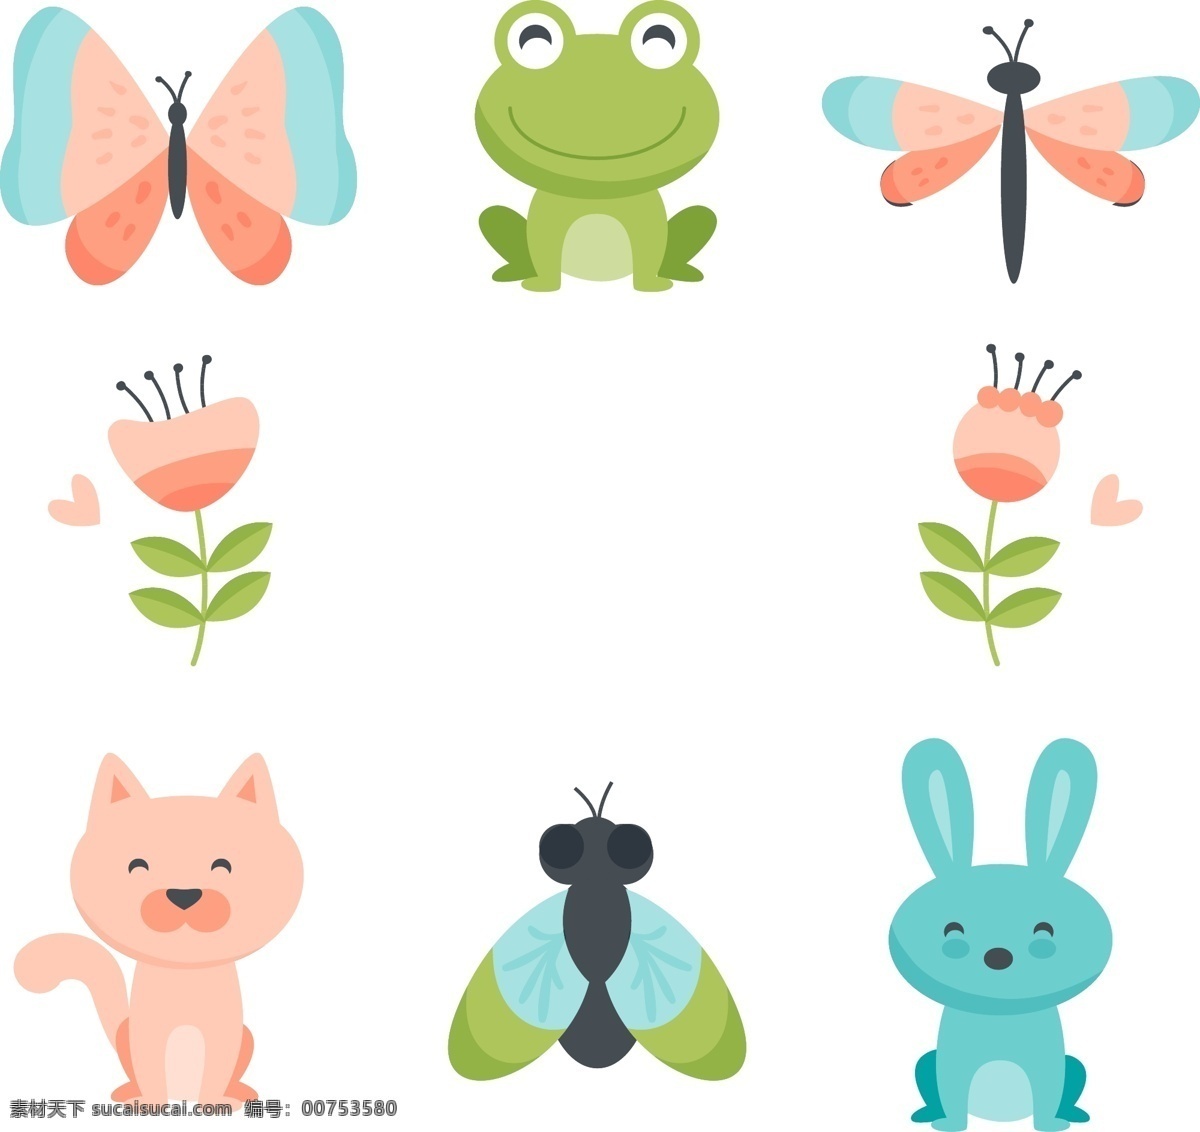 春天的动物 青蛙 兔子 蝴蝶 花 猫咪 蜻蜓 矢量分享素材 动漫动画